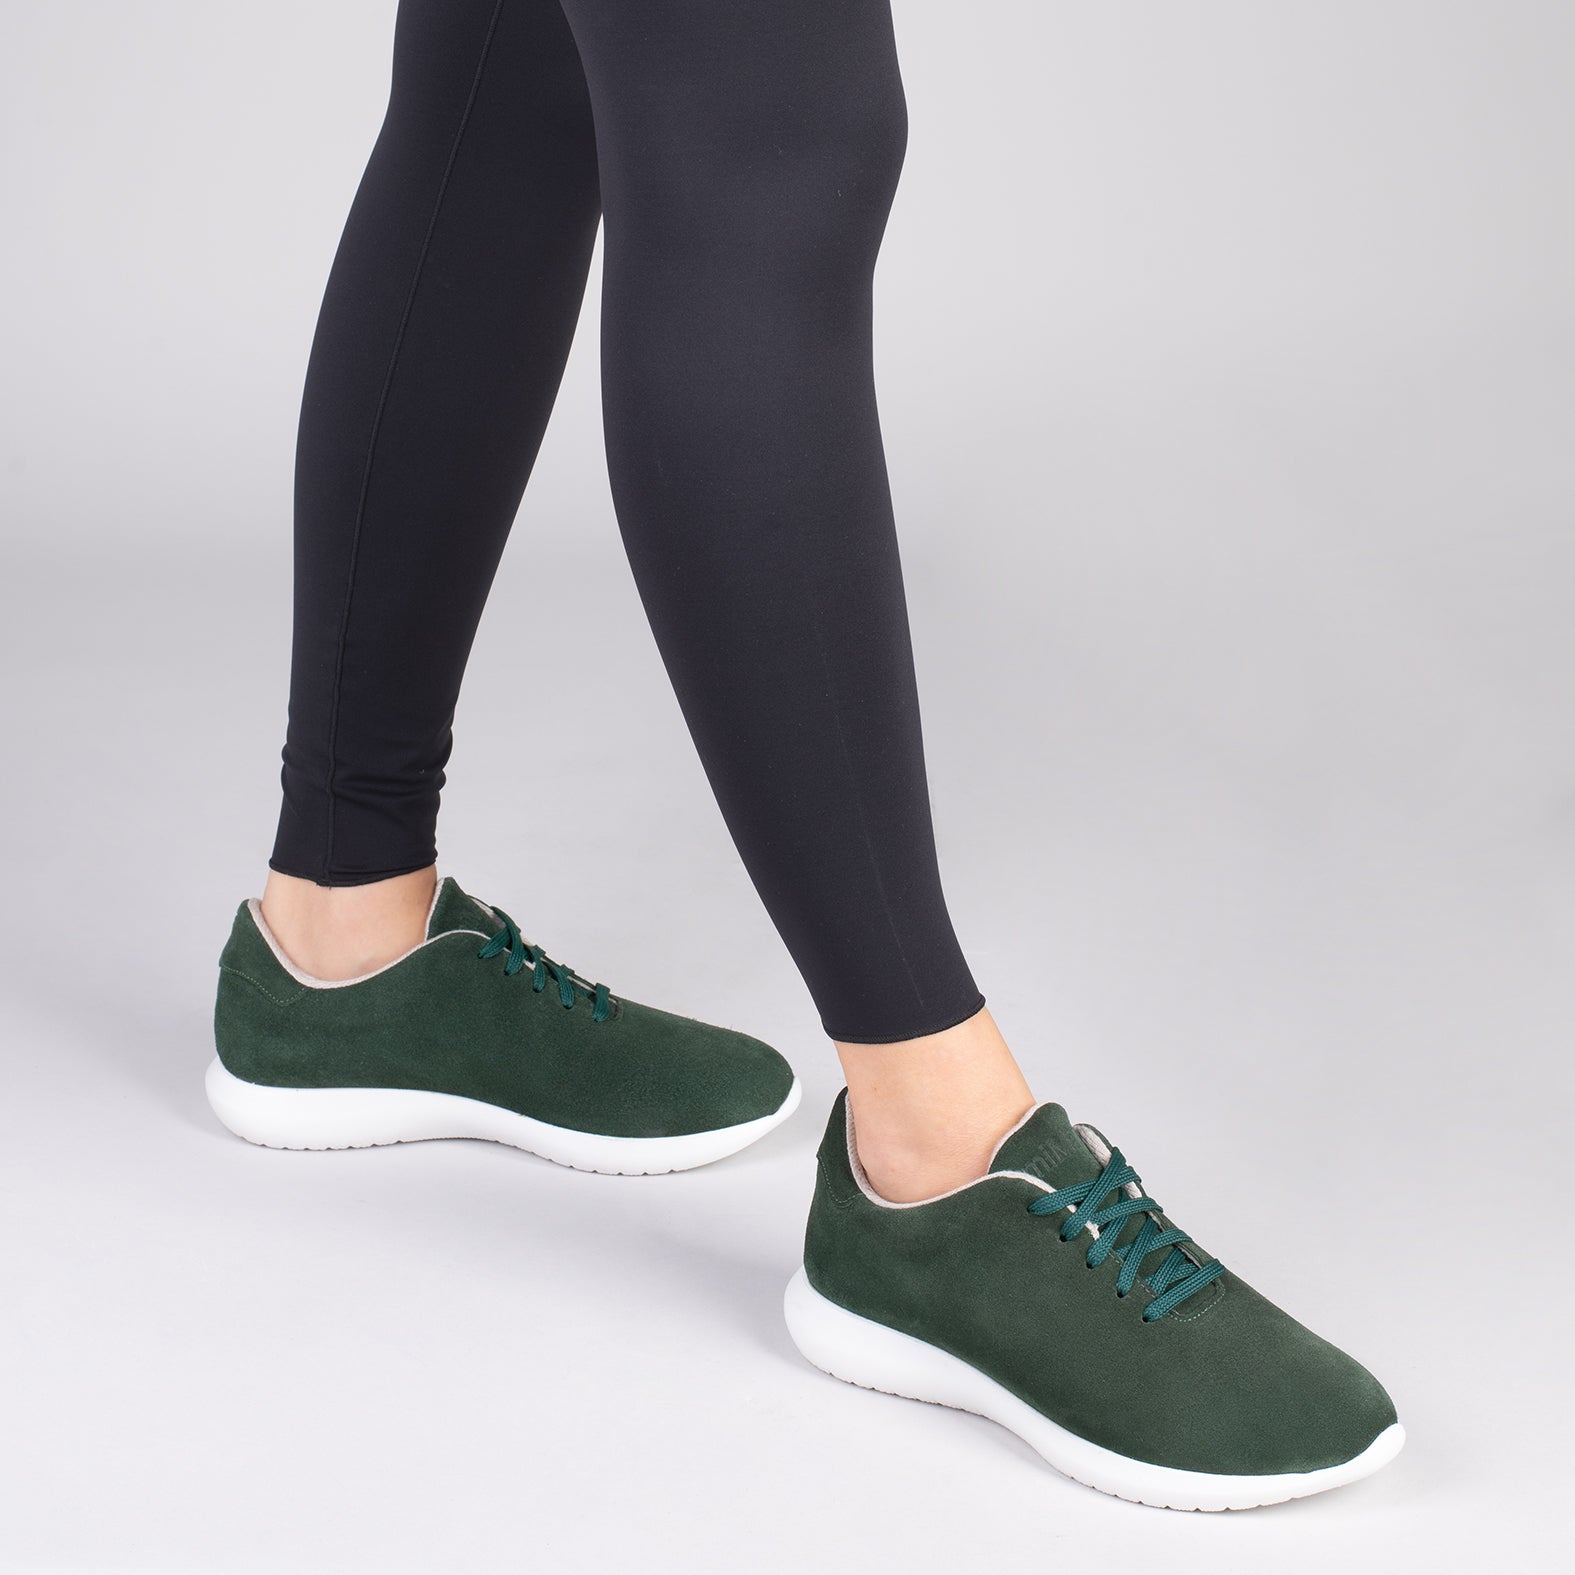 WALK – Chaussures confortables pour femme VERT BOUTEILLE